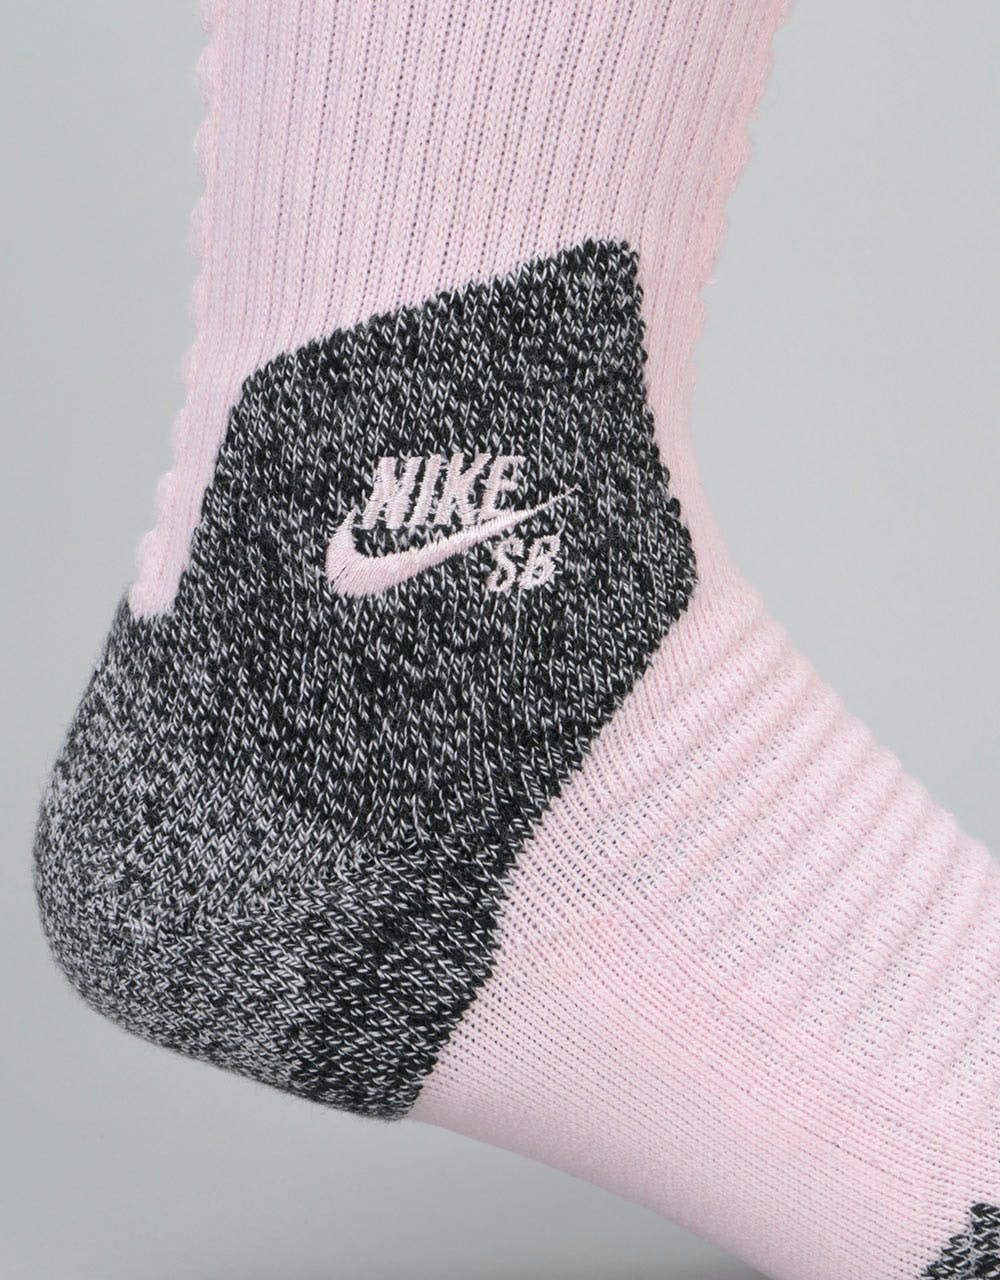 Nike SB Elite Skate 2.0 Crew Socks - Prism Pink/Black/Black